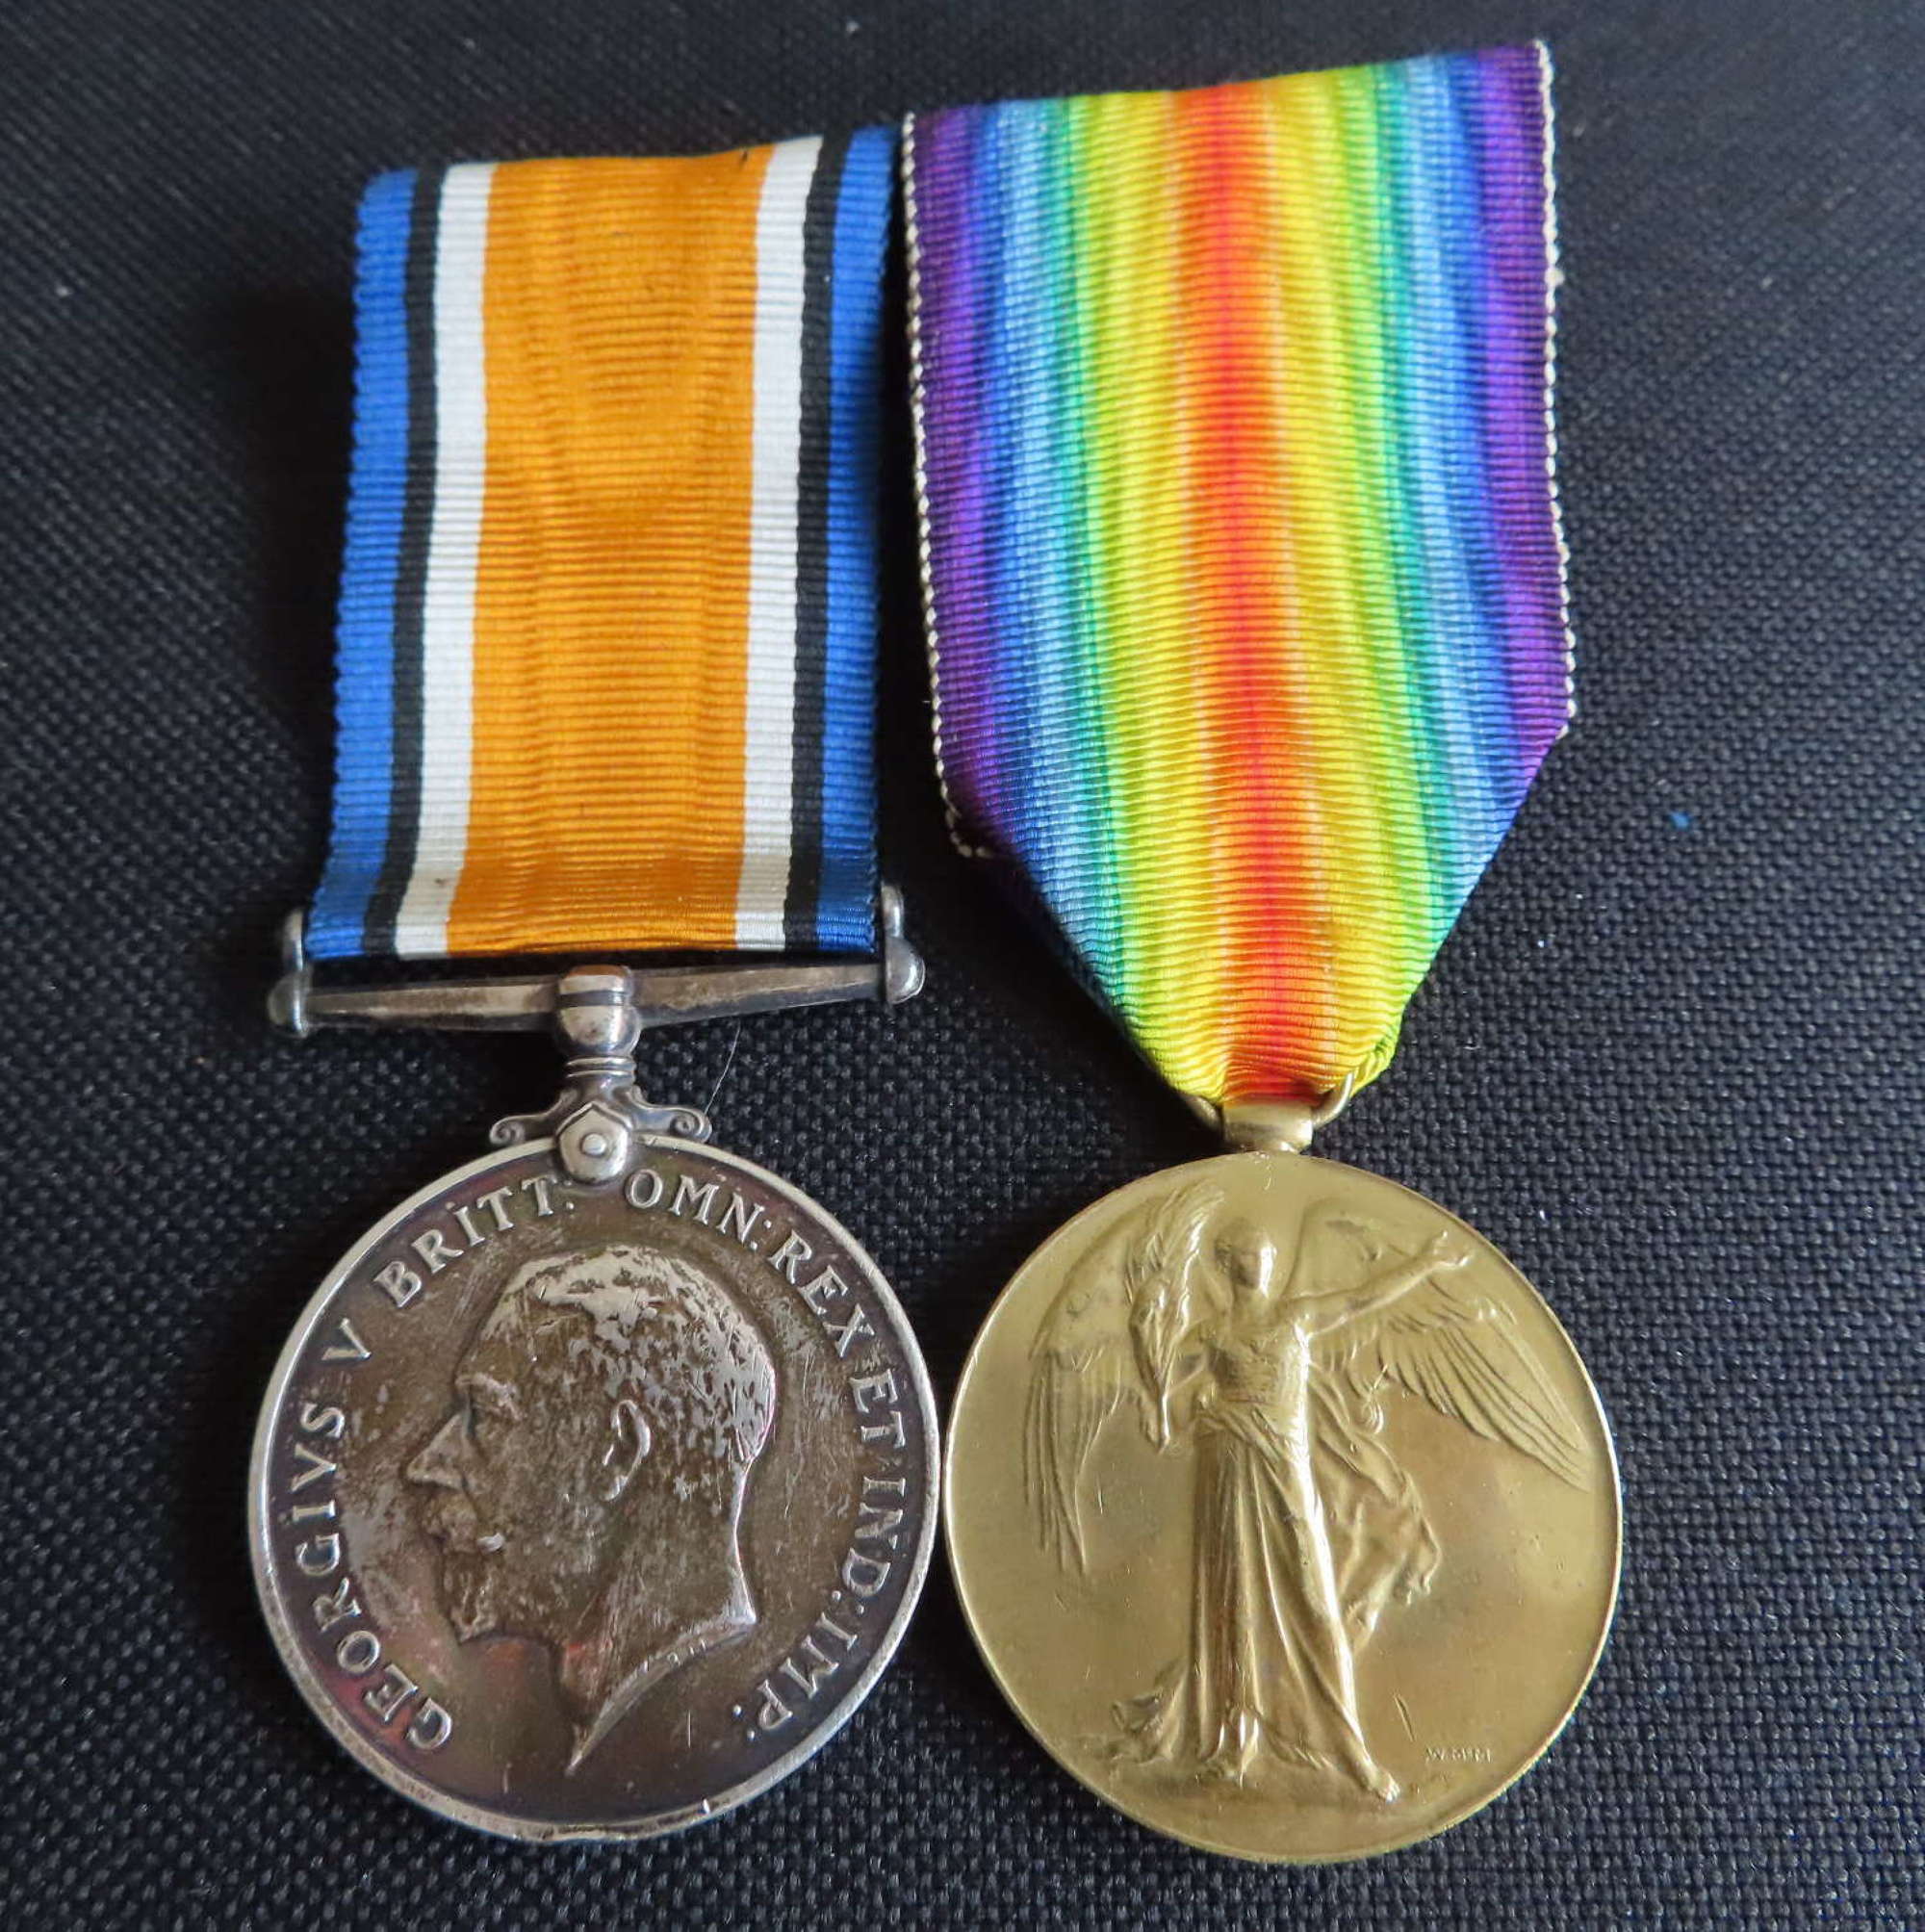 WW1 pair of medals awarded to 182459 Pte A E Pocock R.E.